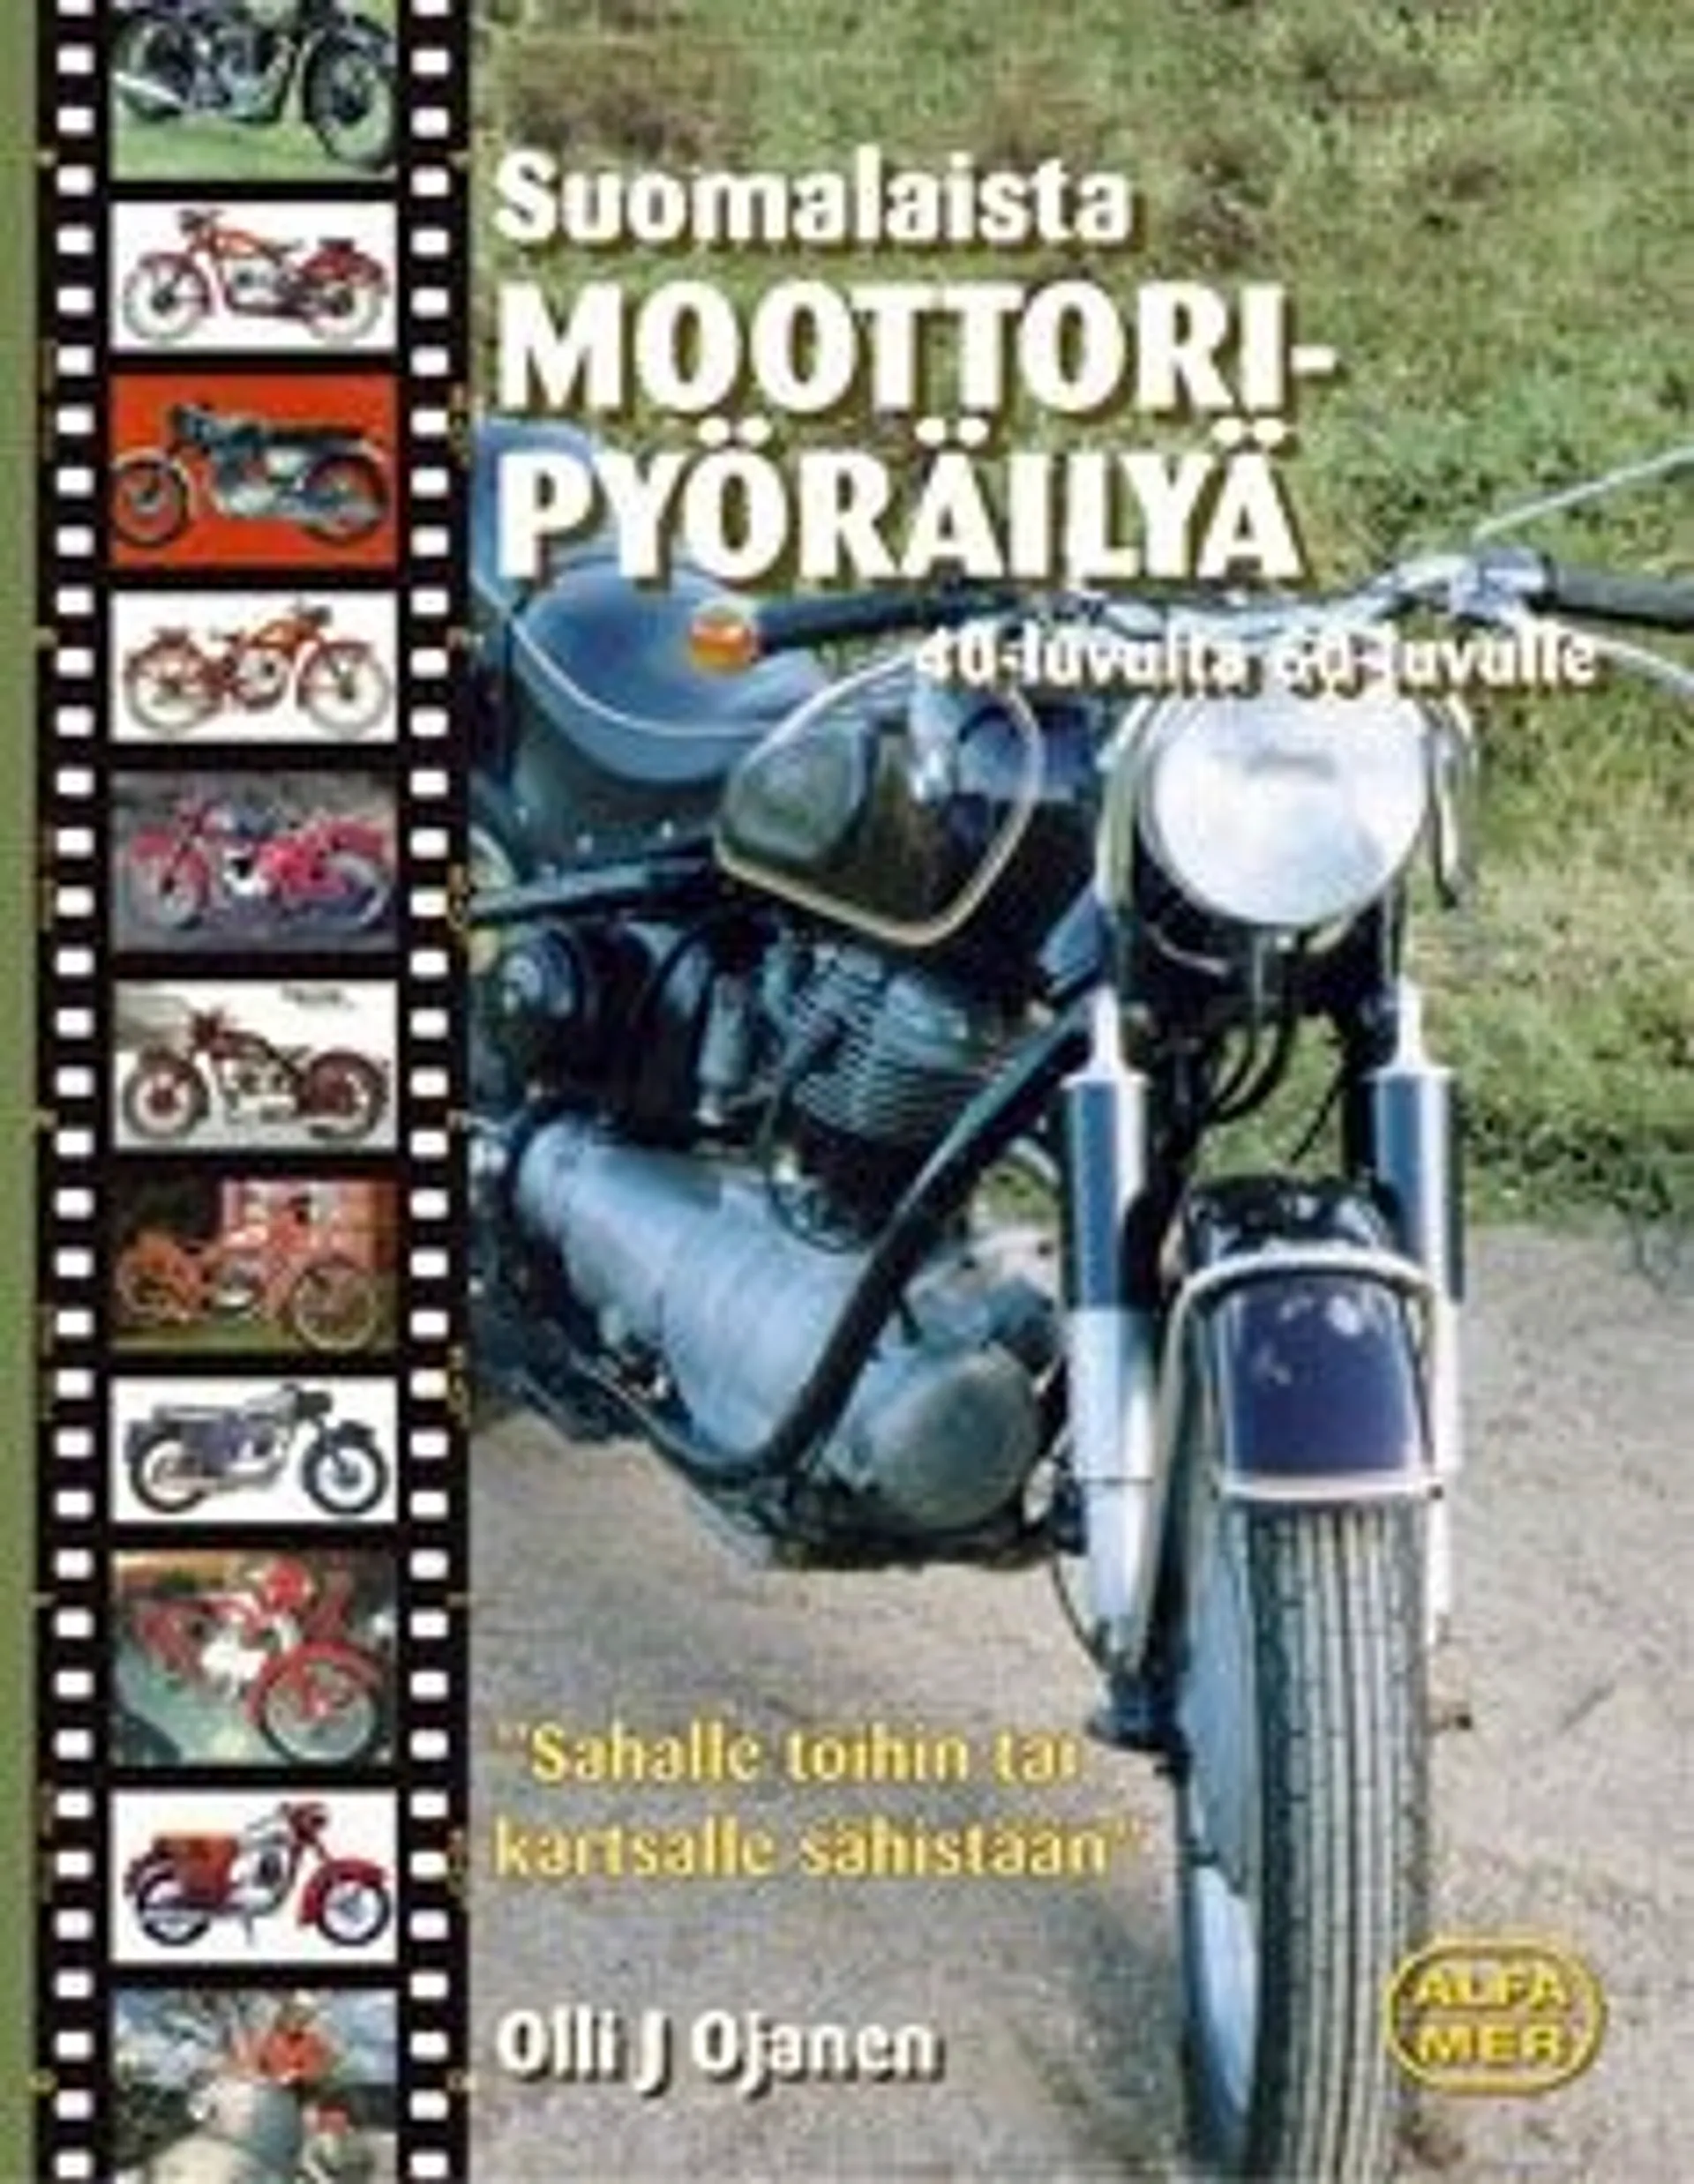 Ojanen, Suomalaista moottoripyöräilyä 40-luvulta 60-luvulle